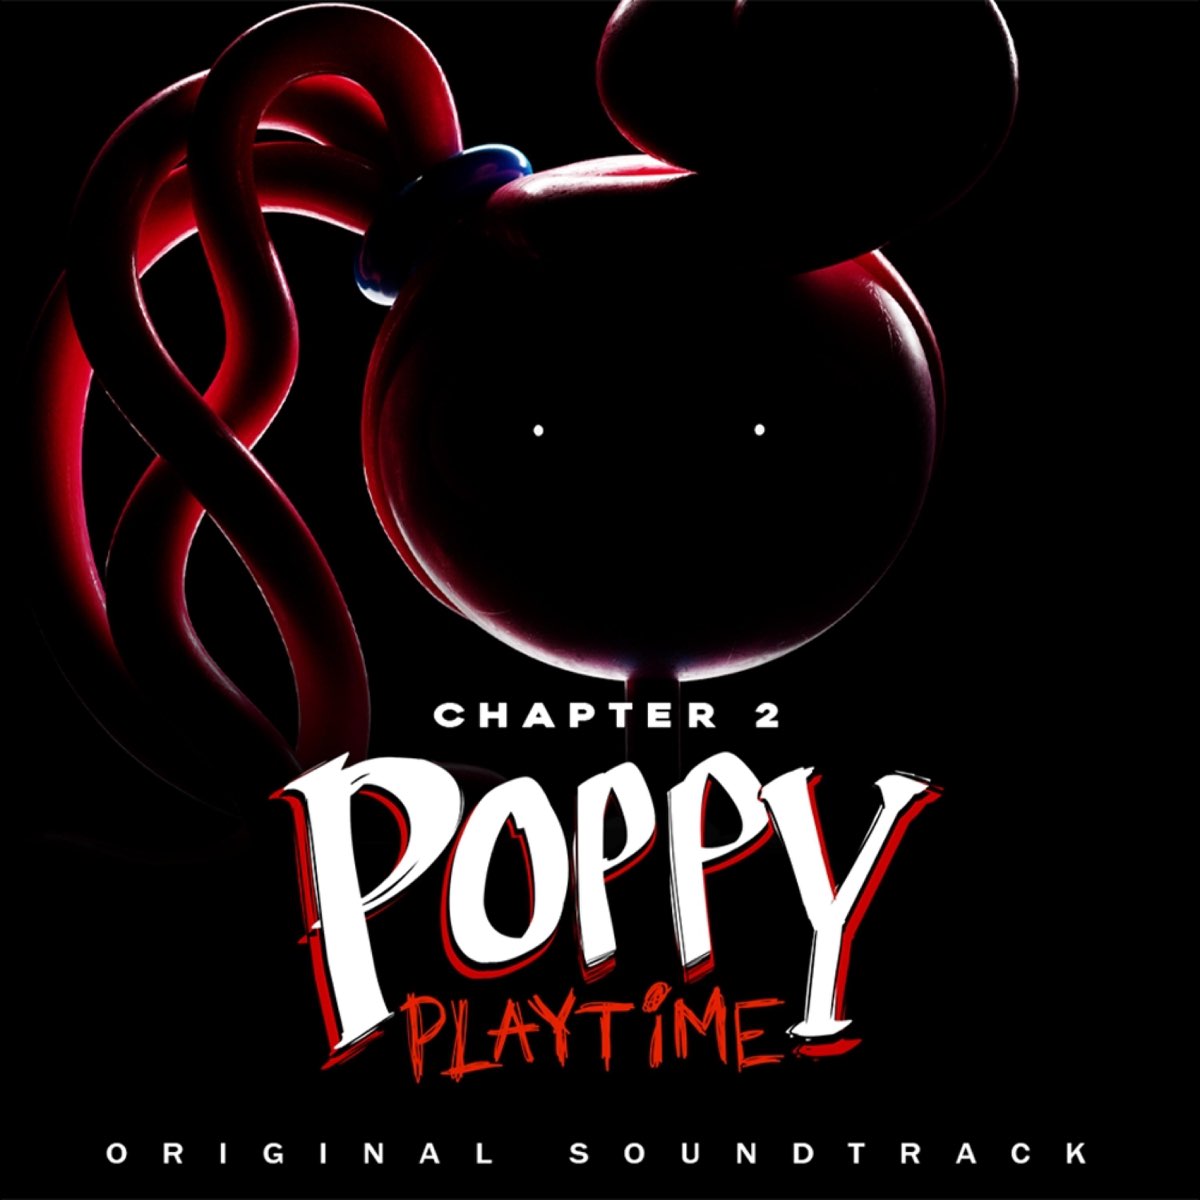 Poppy Playtime Chapter 2 Full OST 